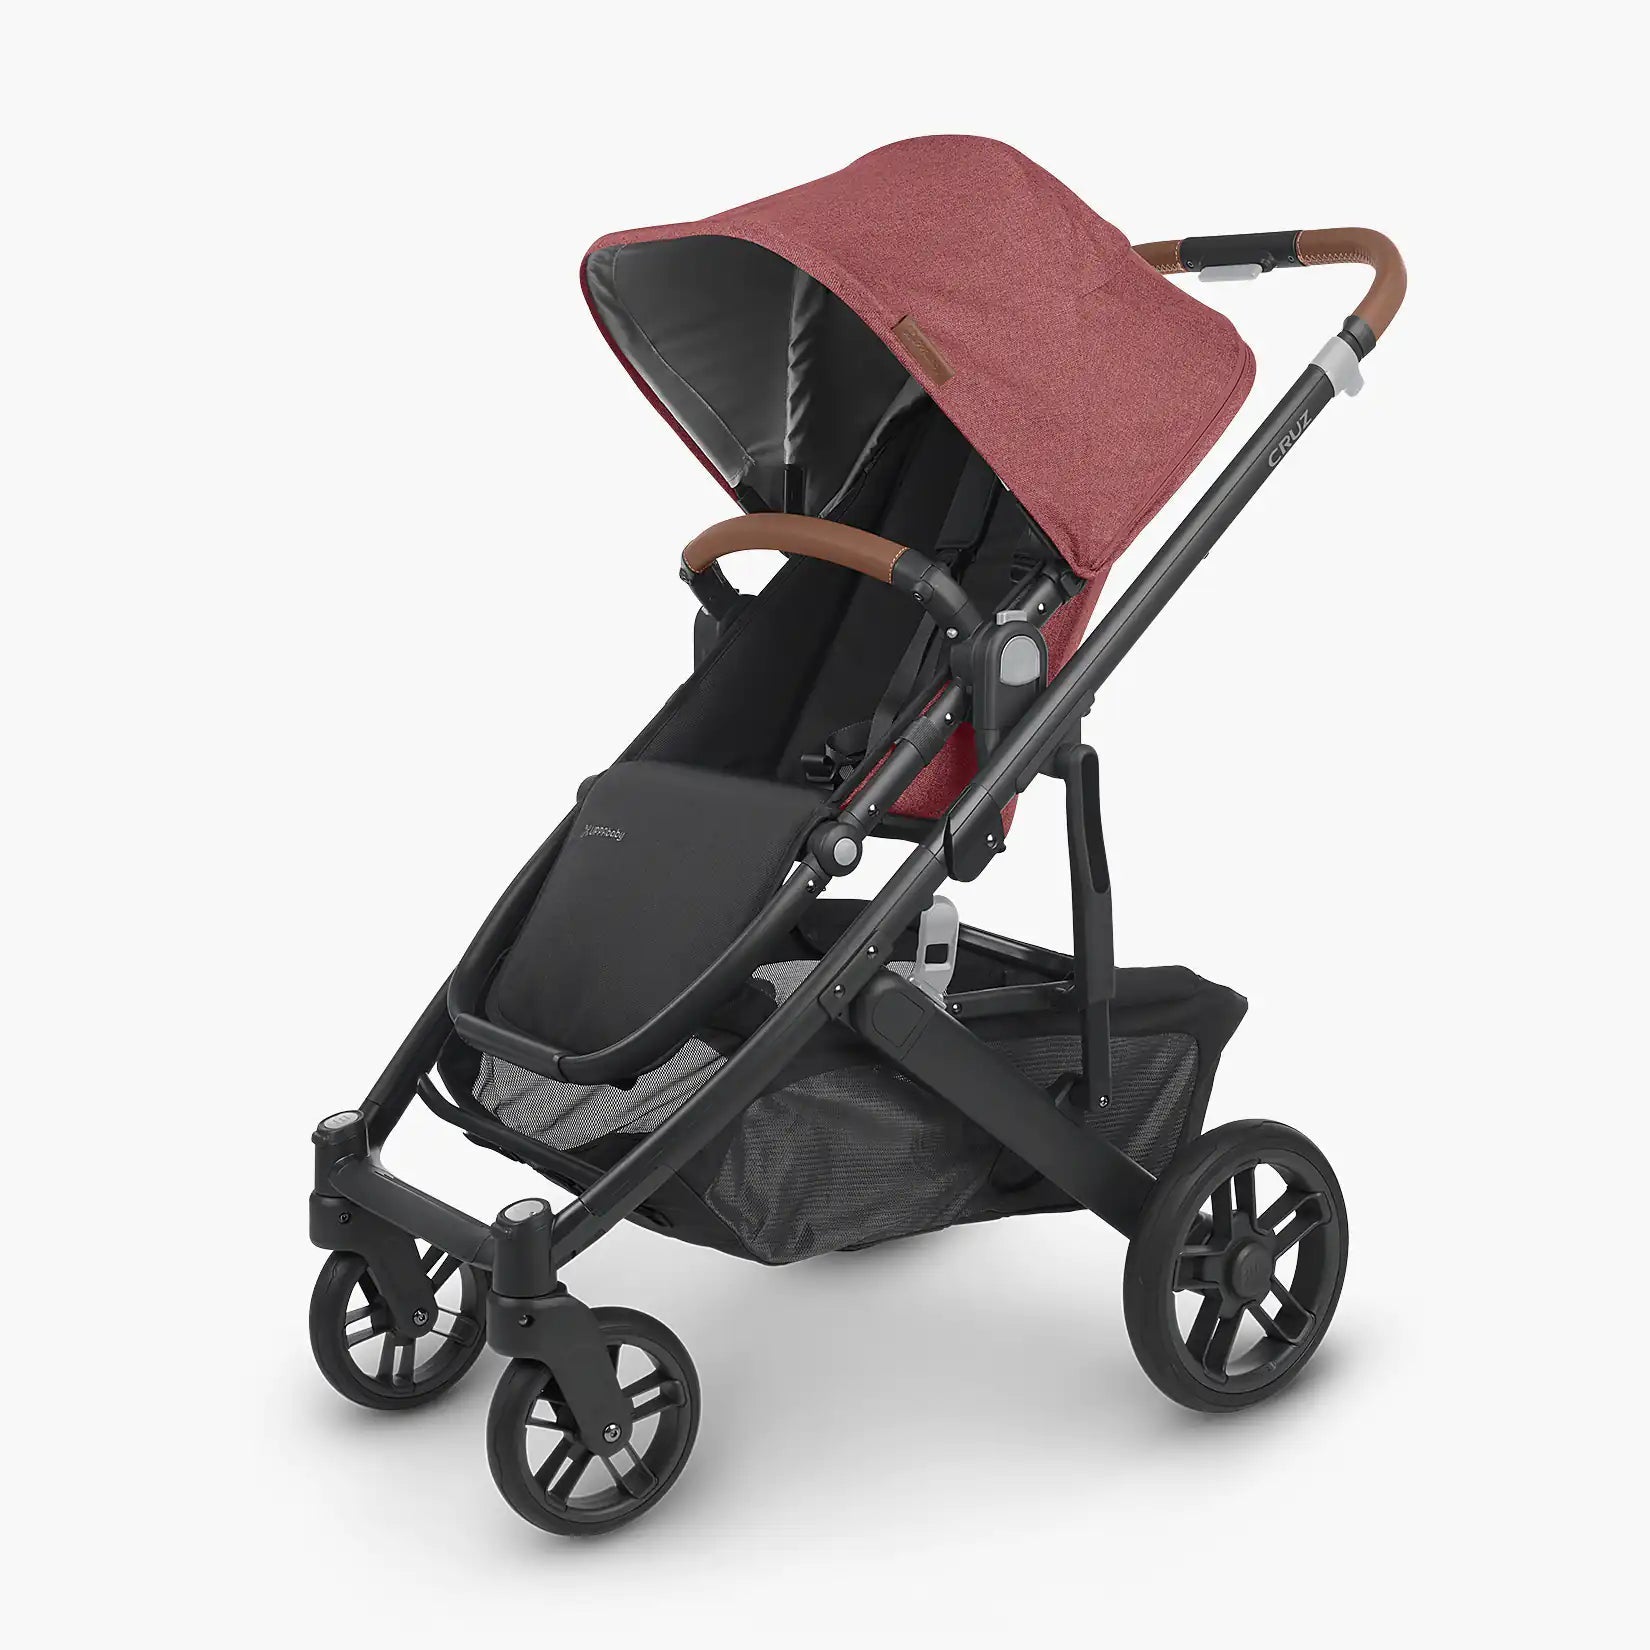 UPPAbaby CRUZ V2 Stroller - ANB Baby -810030098911$500 - $1000